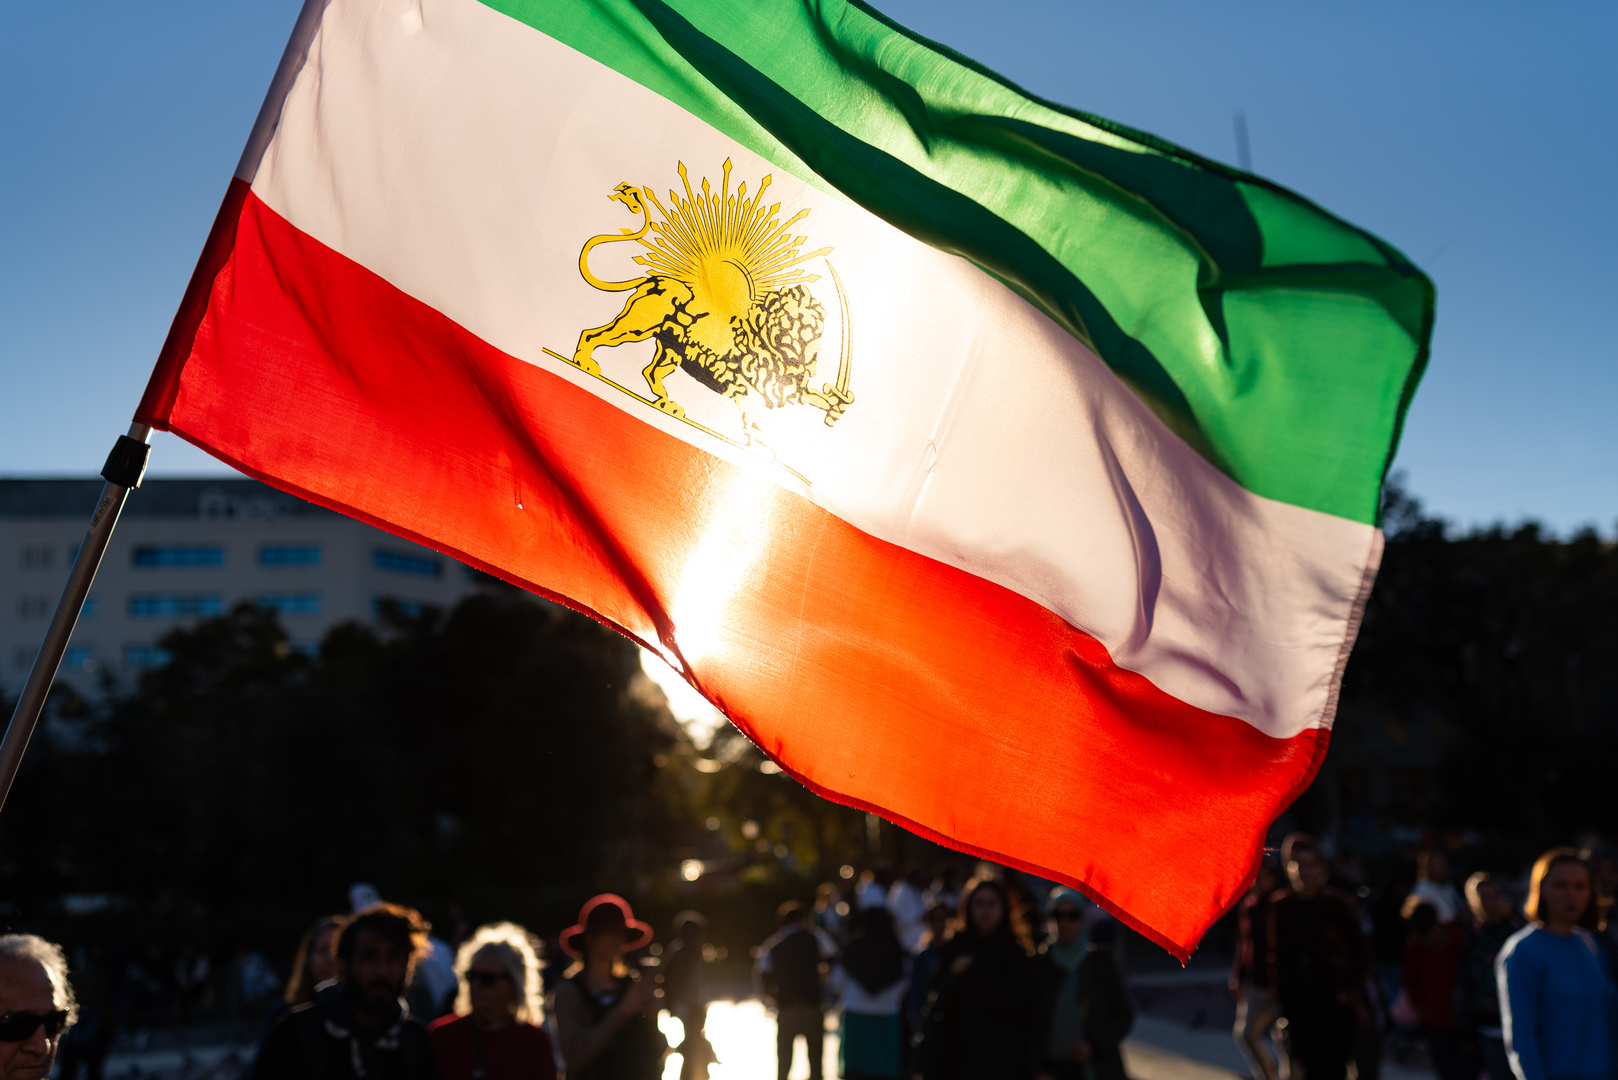 السفارة الروسية تصدر بيانا حول الوضع في إيران